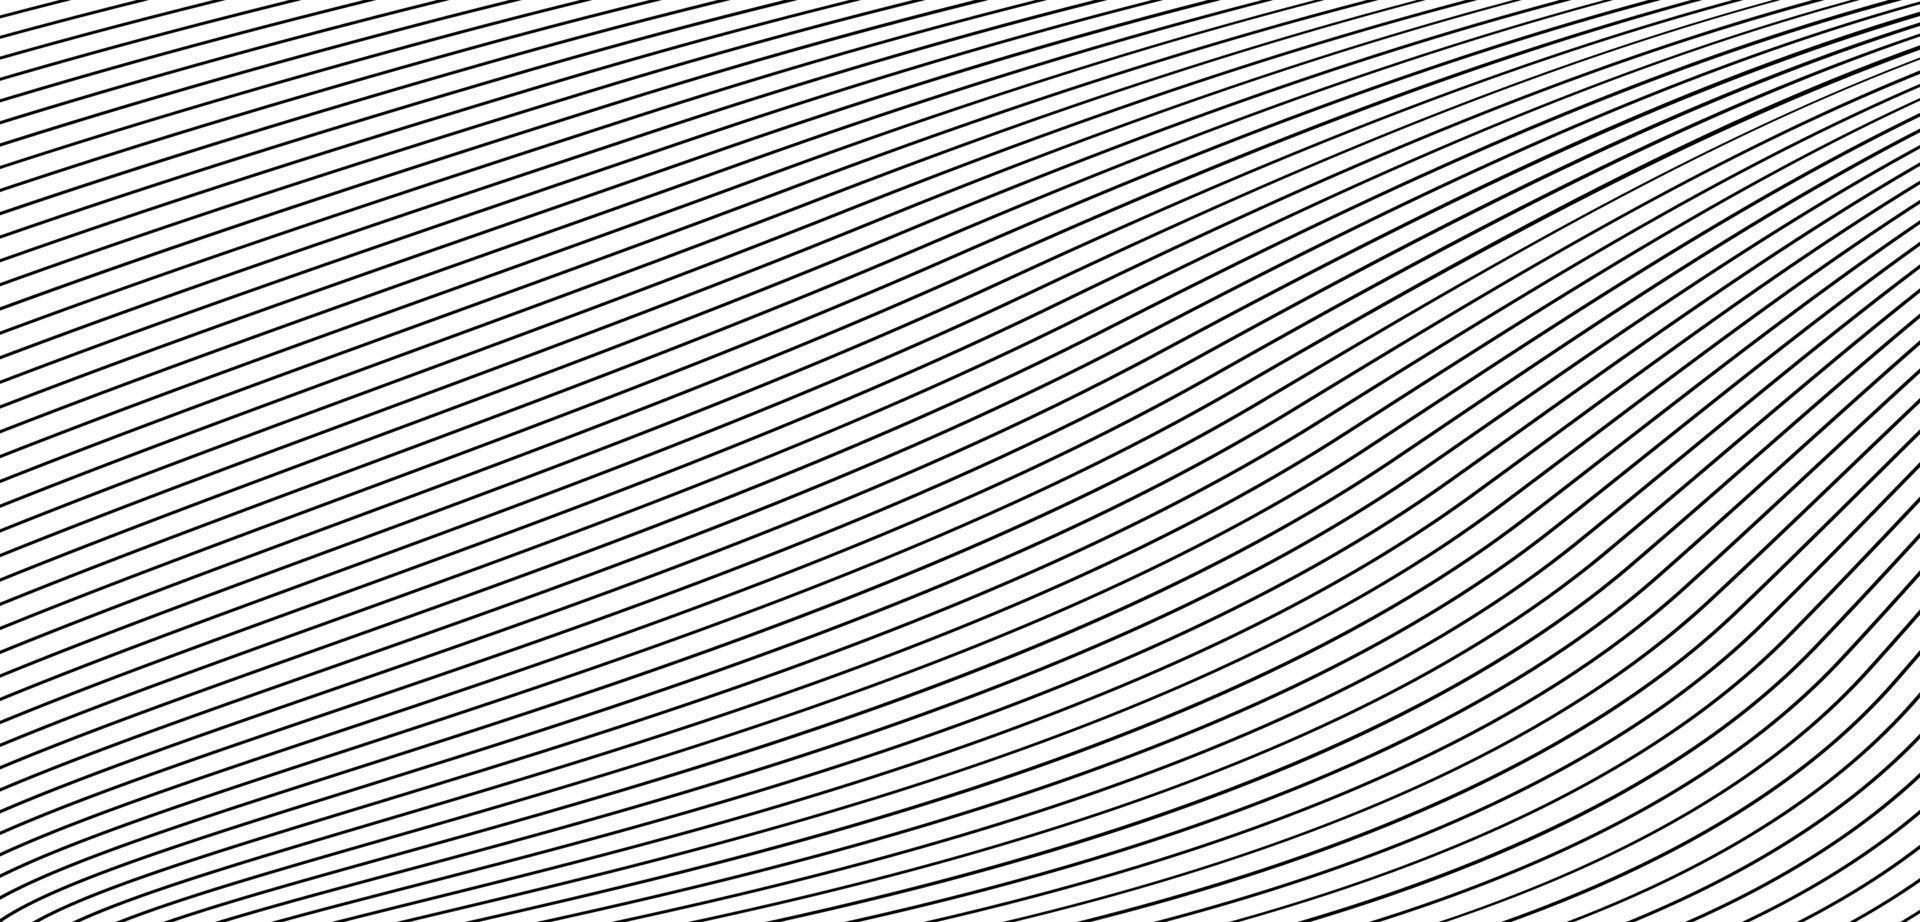 abstrait blanc et gris sur fond argent clair design moderne. illustration vectorielle vecteur